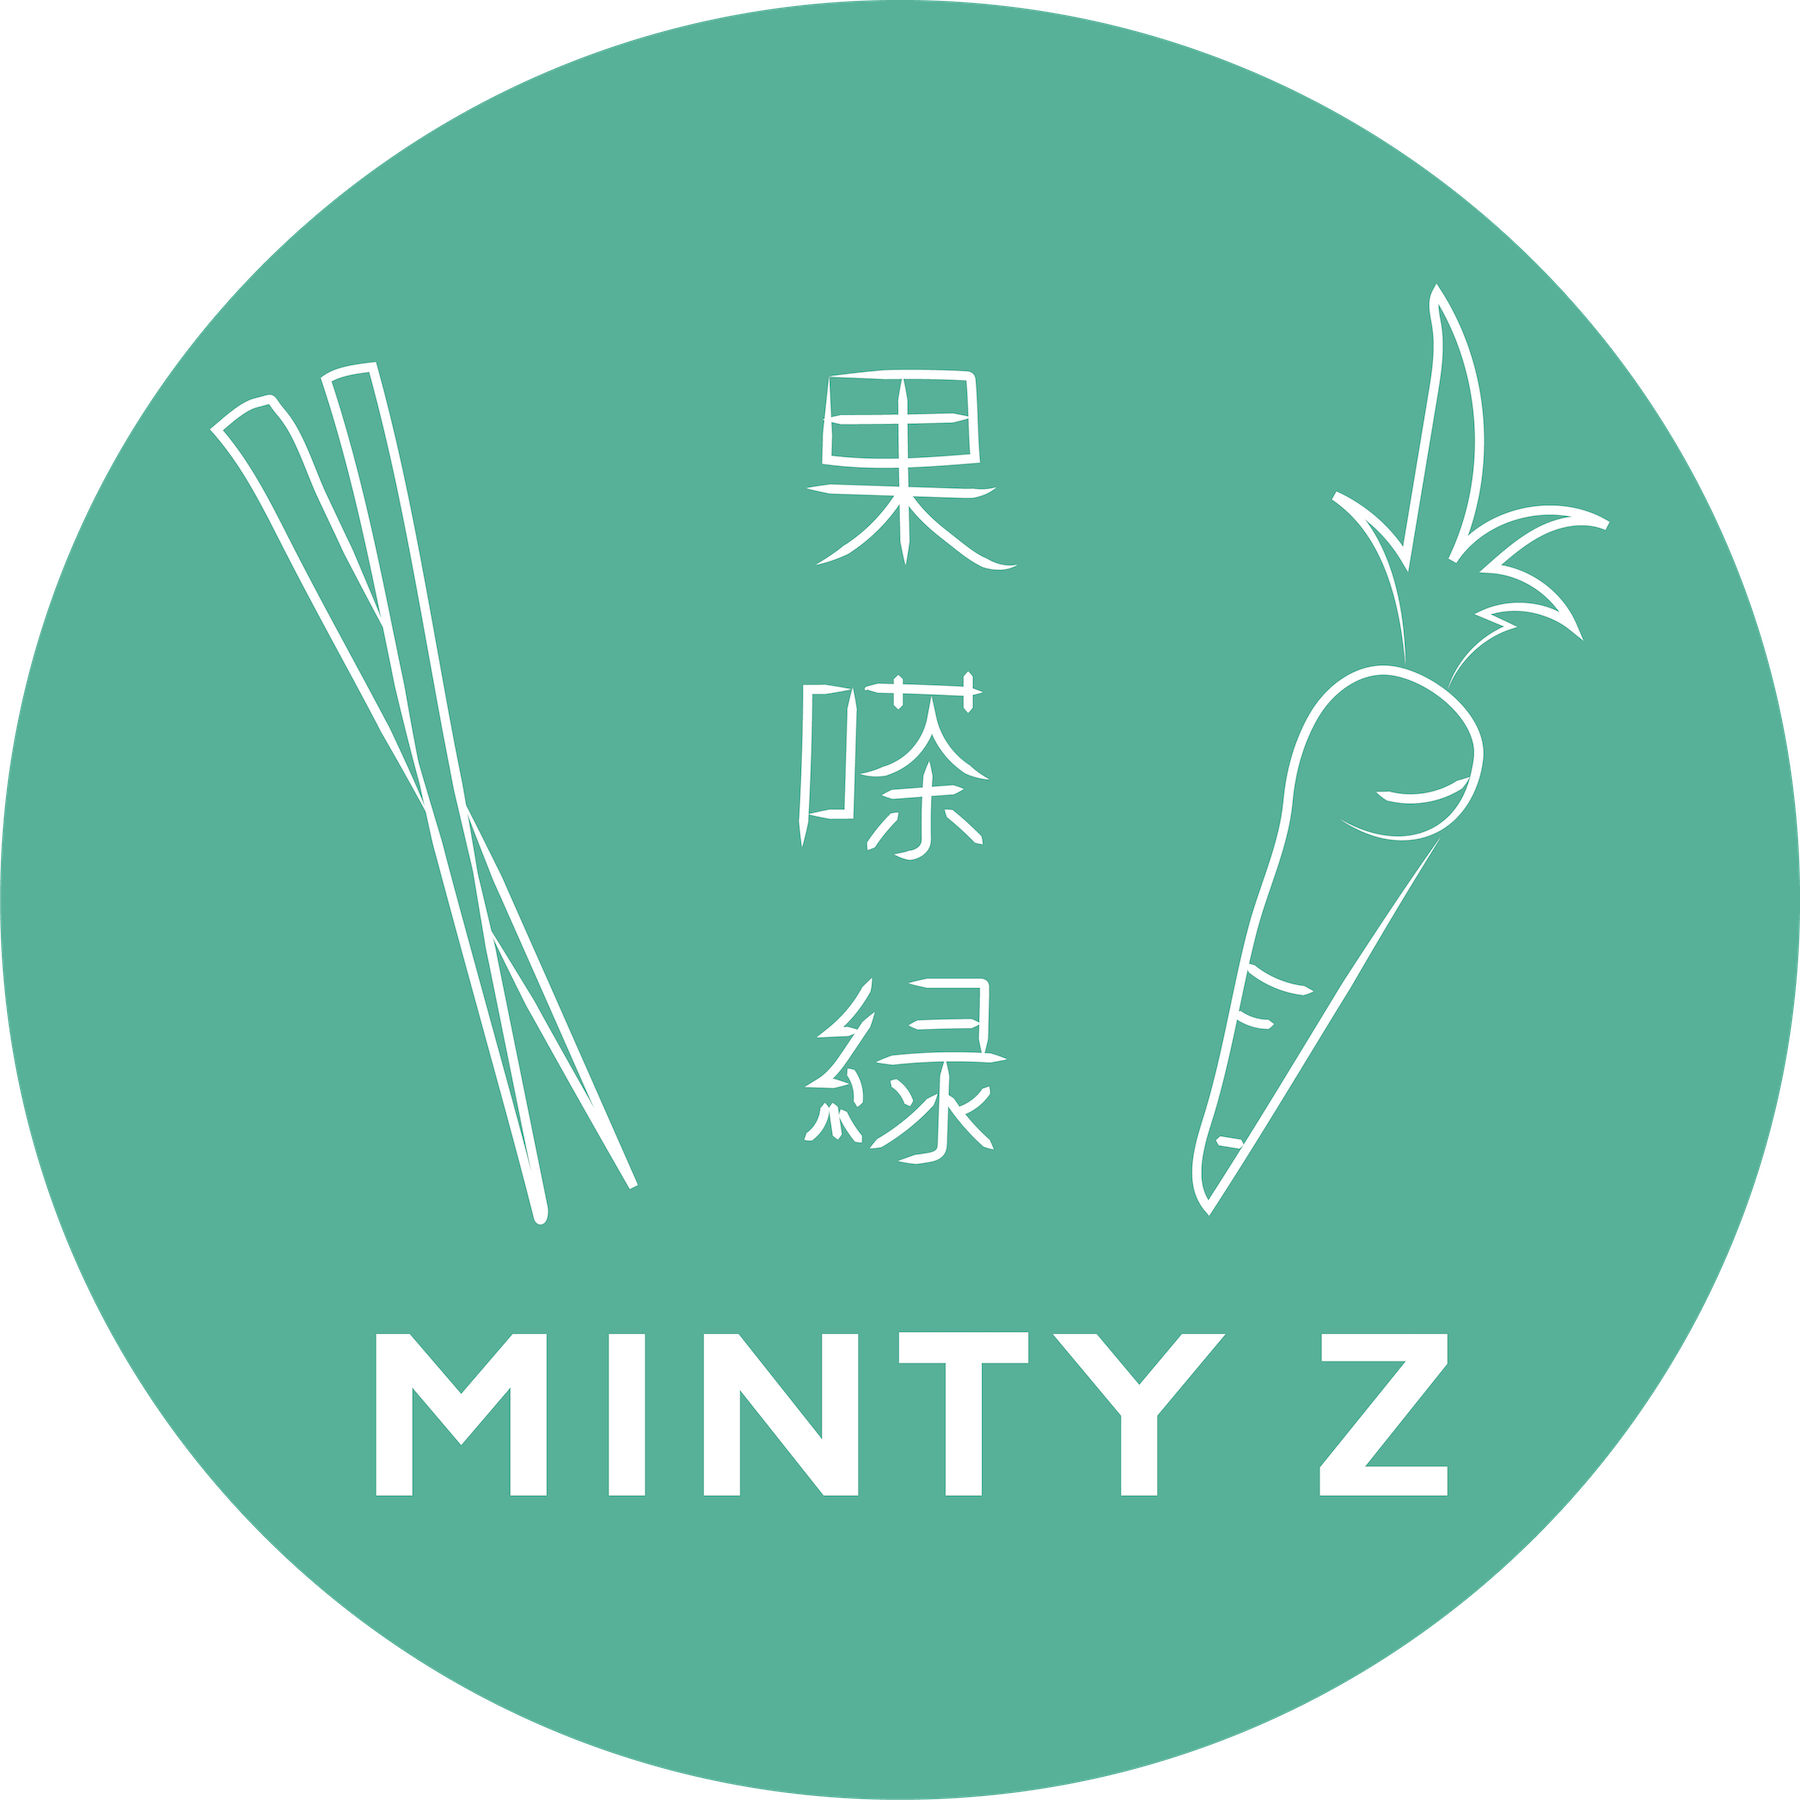 Minty Z Home